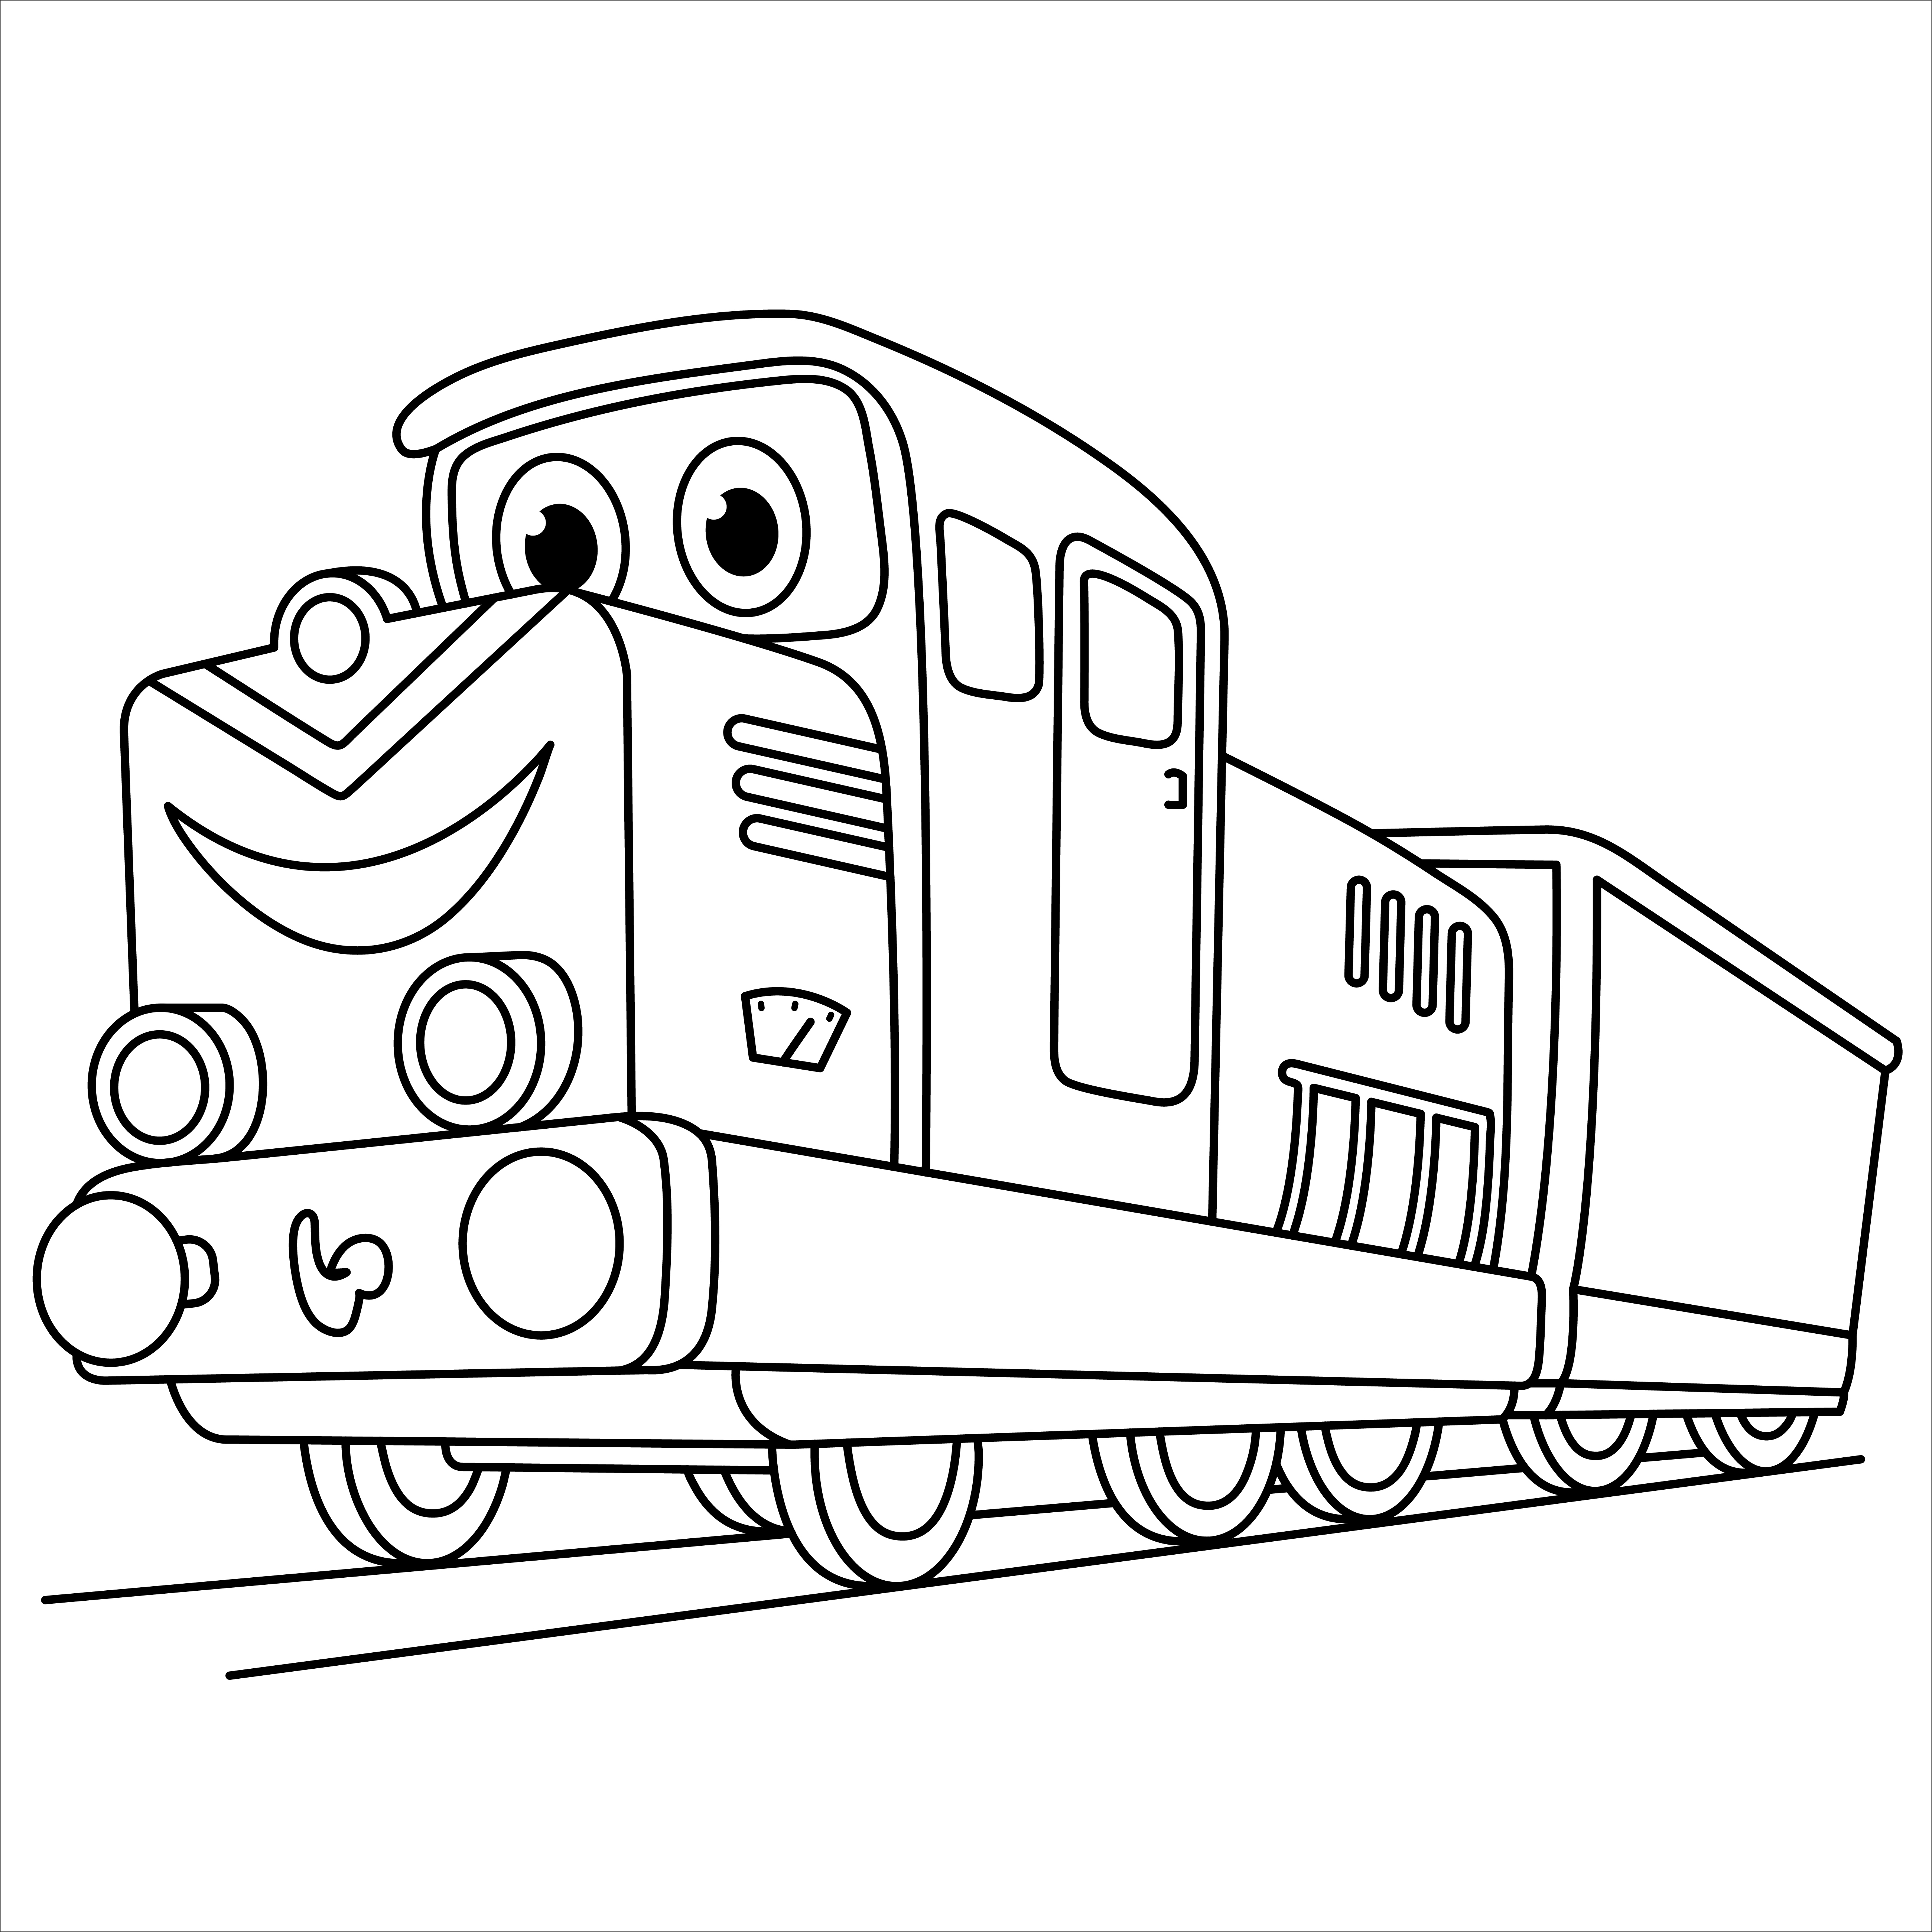 Раскраска мультяшный поезд локомотив с лицом формата А4 в высоком качестве